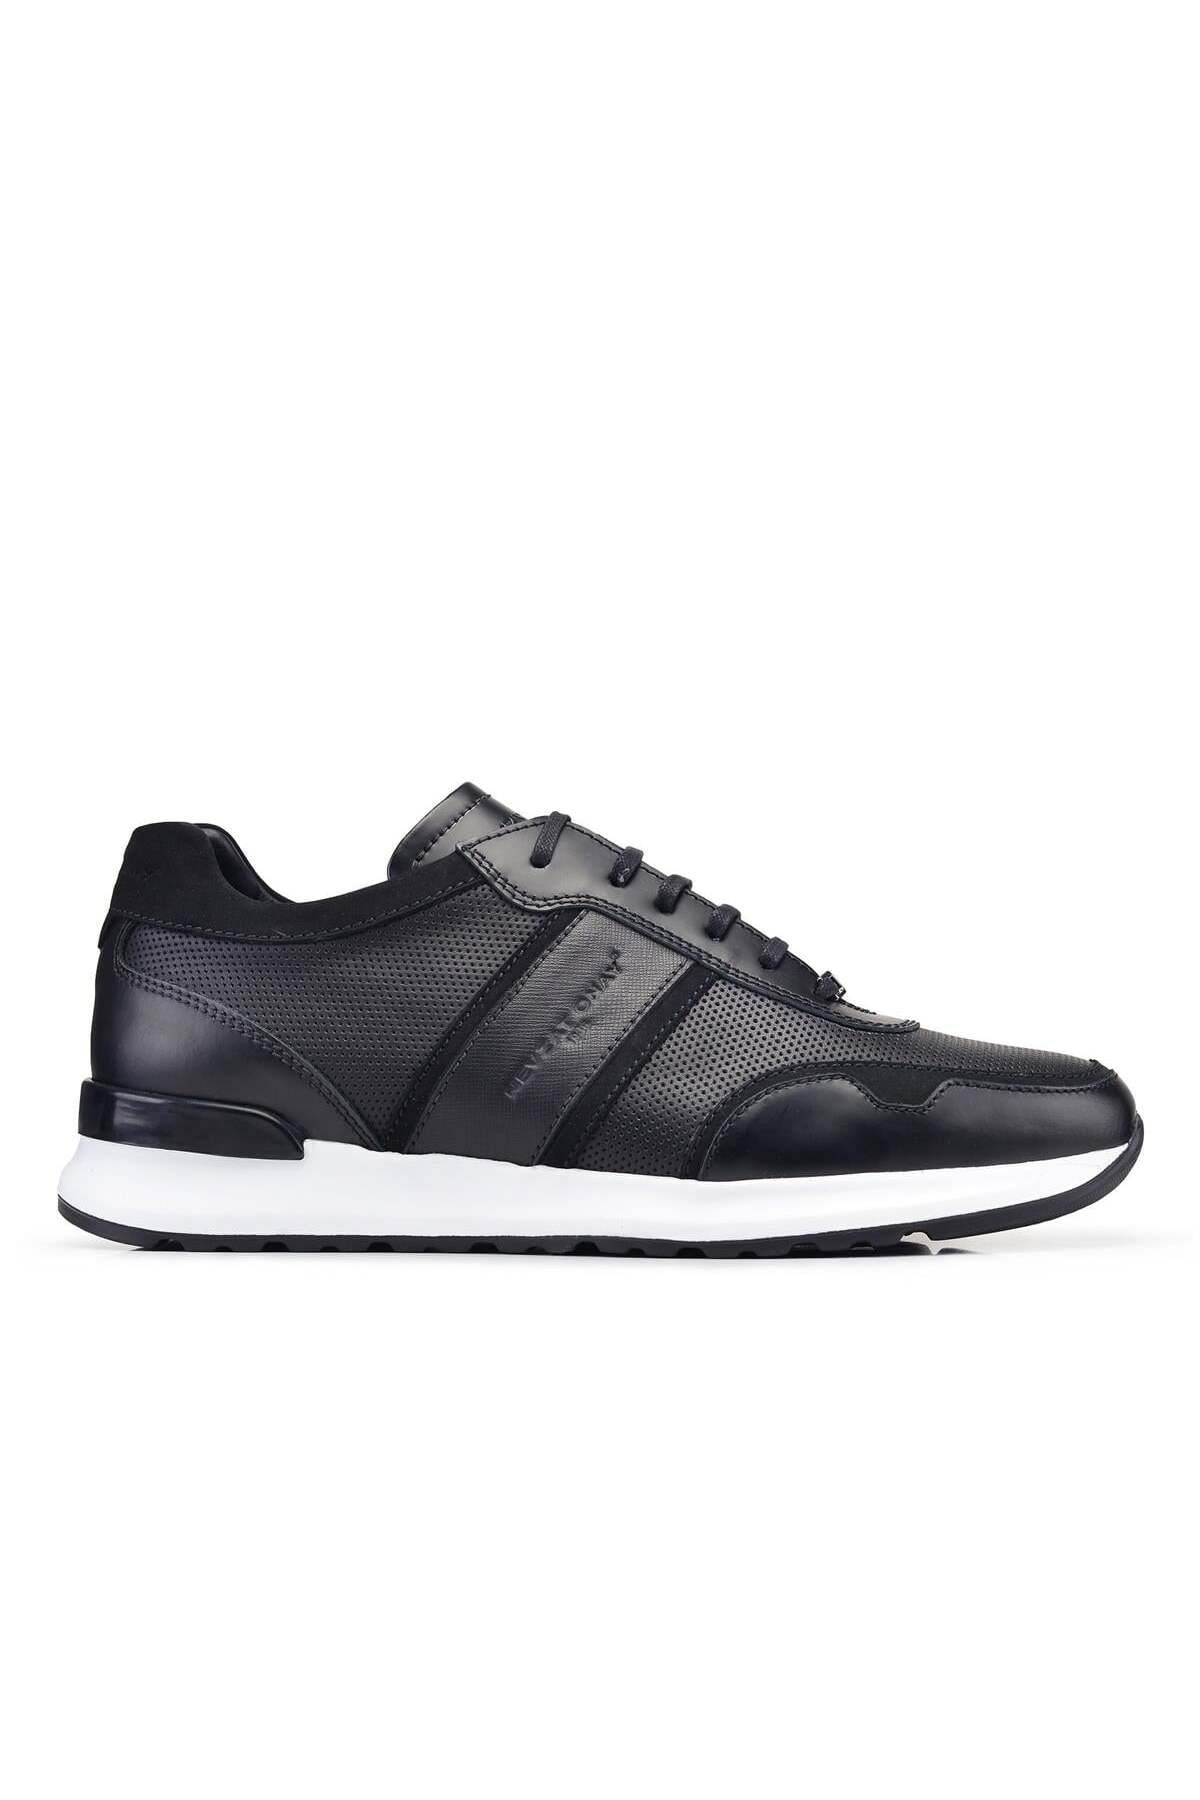 Nevzat Onay Siyah Bağcıklı Erkek Sneaker -61301-